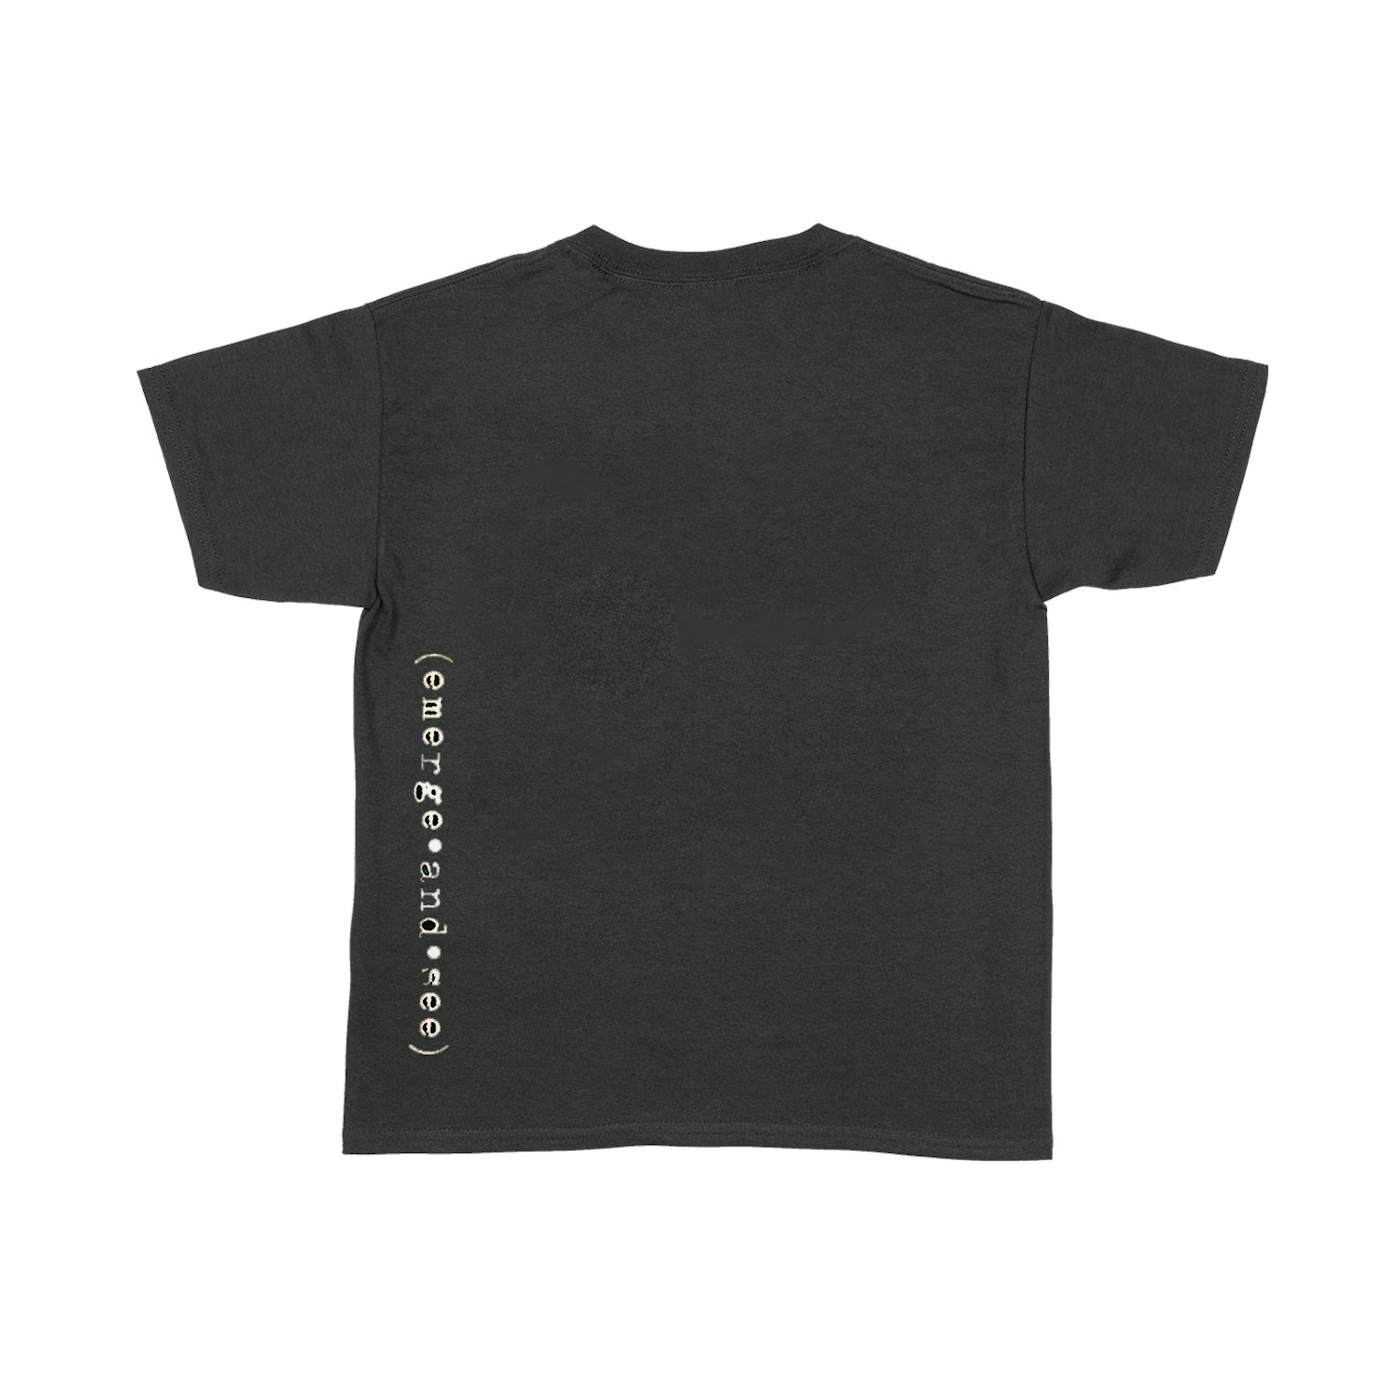 August Alsina Innervision Black T-Shirt